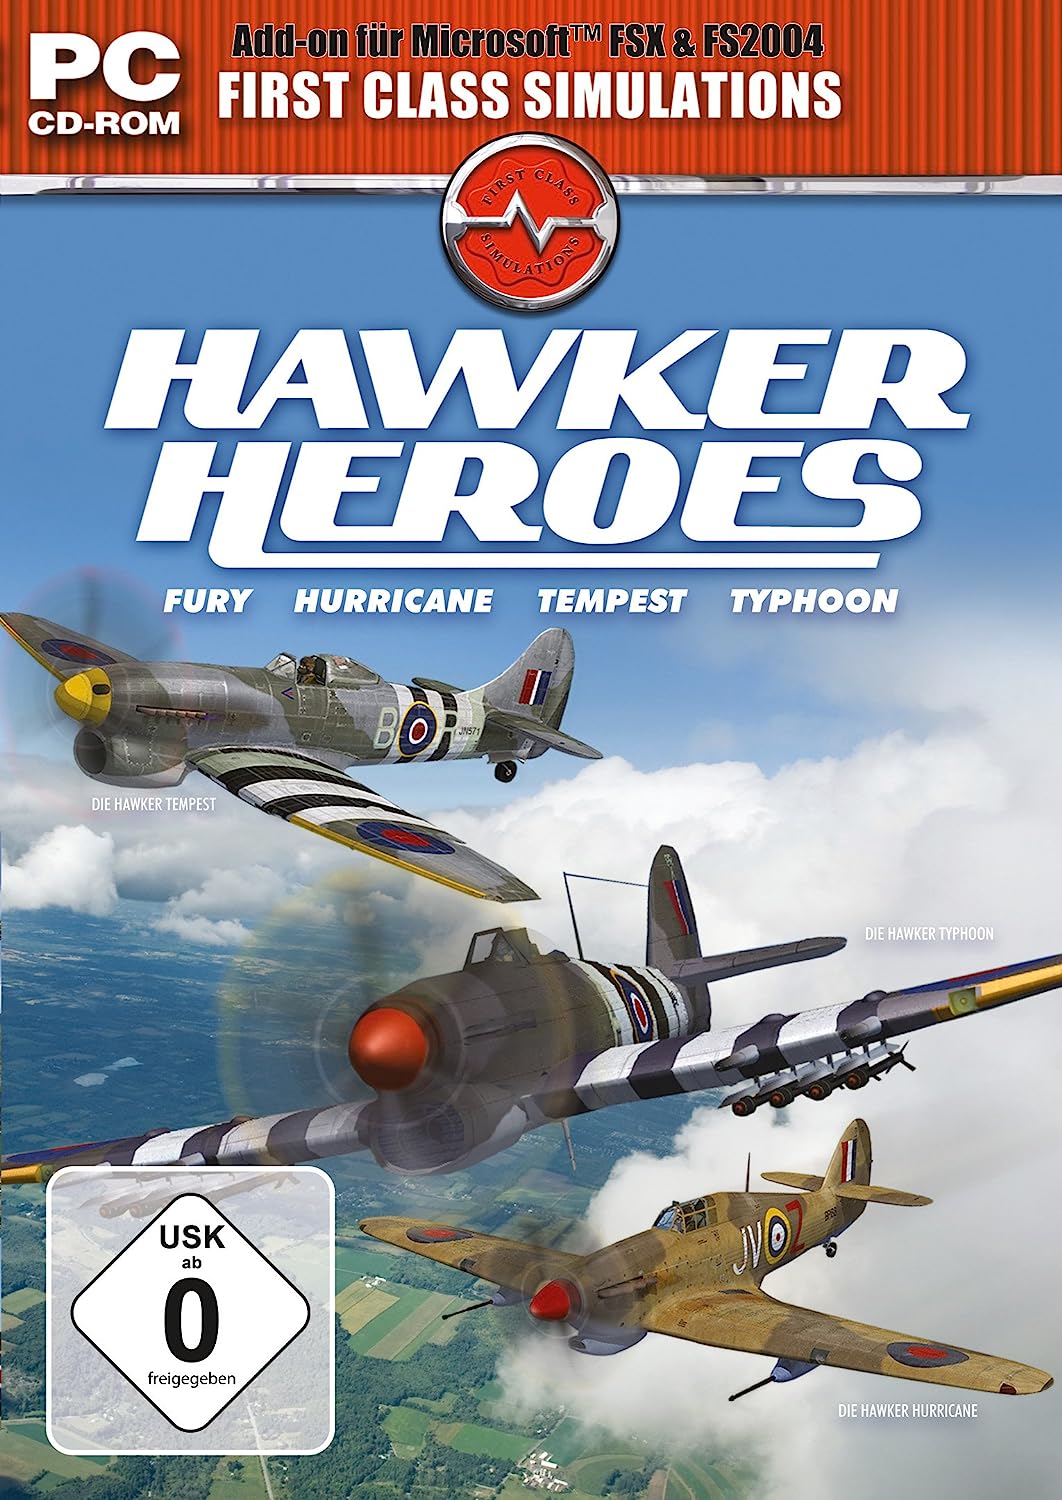 PC Hawker Heroes - NOORHS Latinoamérica, S.A. de C.V.